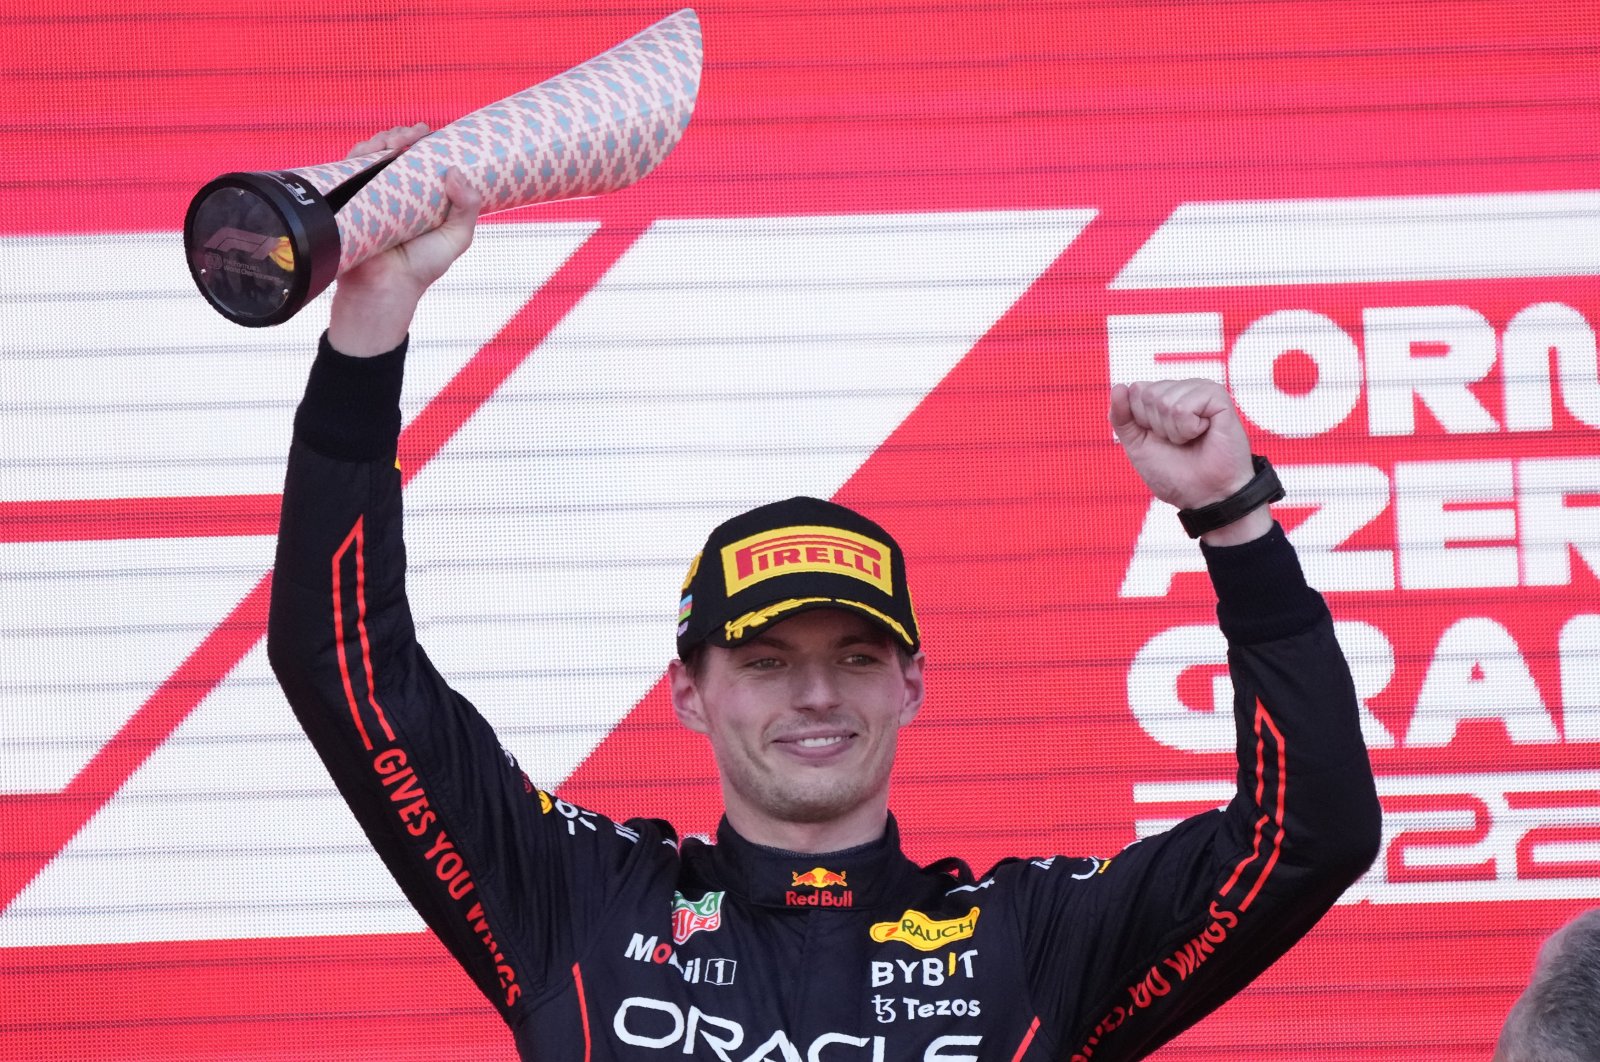 Juara dunia Verstappen mengklaim kemenangan mendominasi di GP Azerbaijan